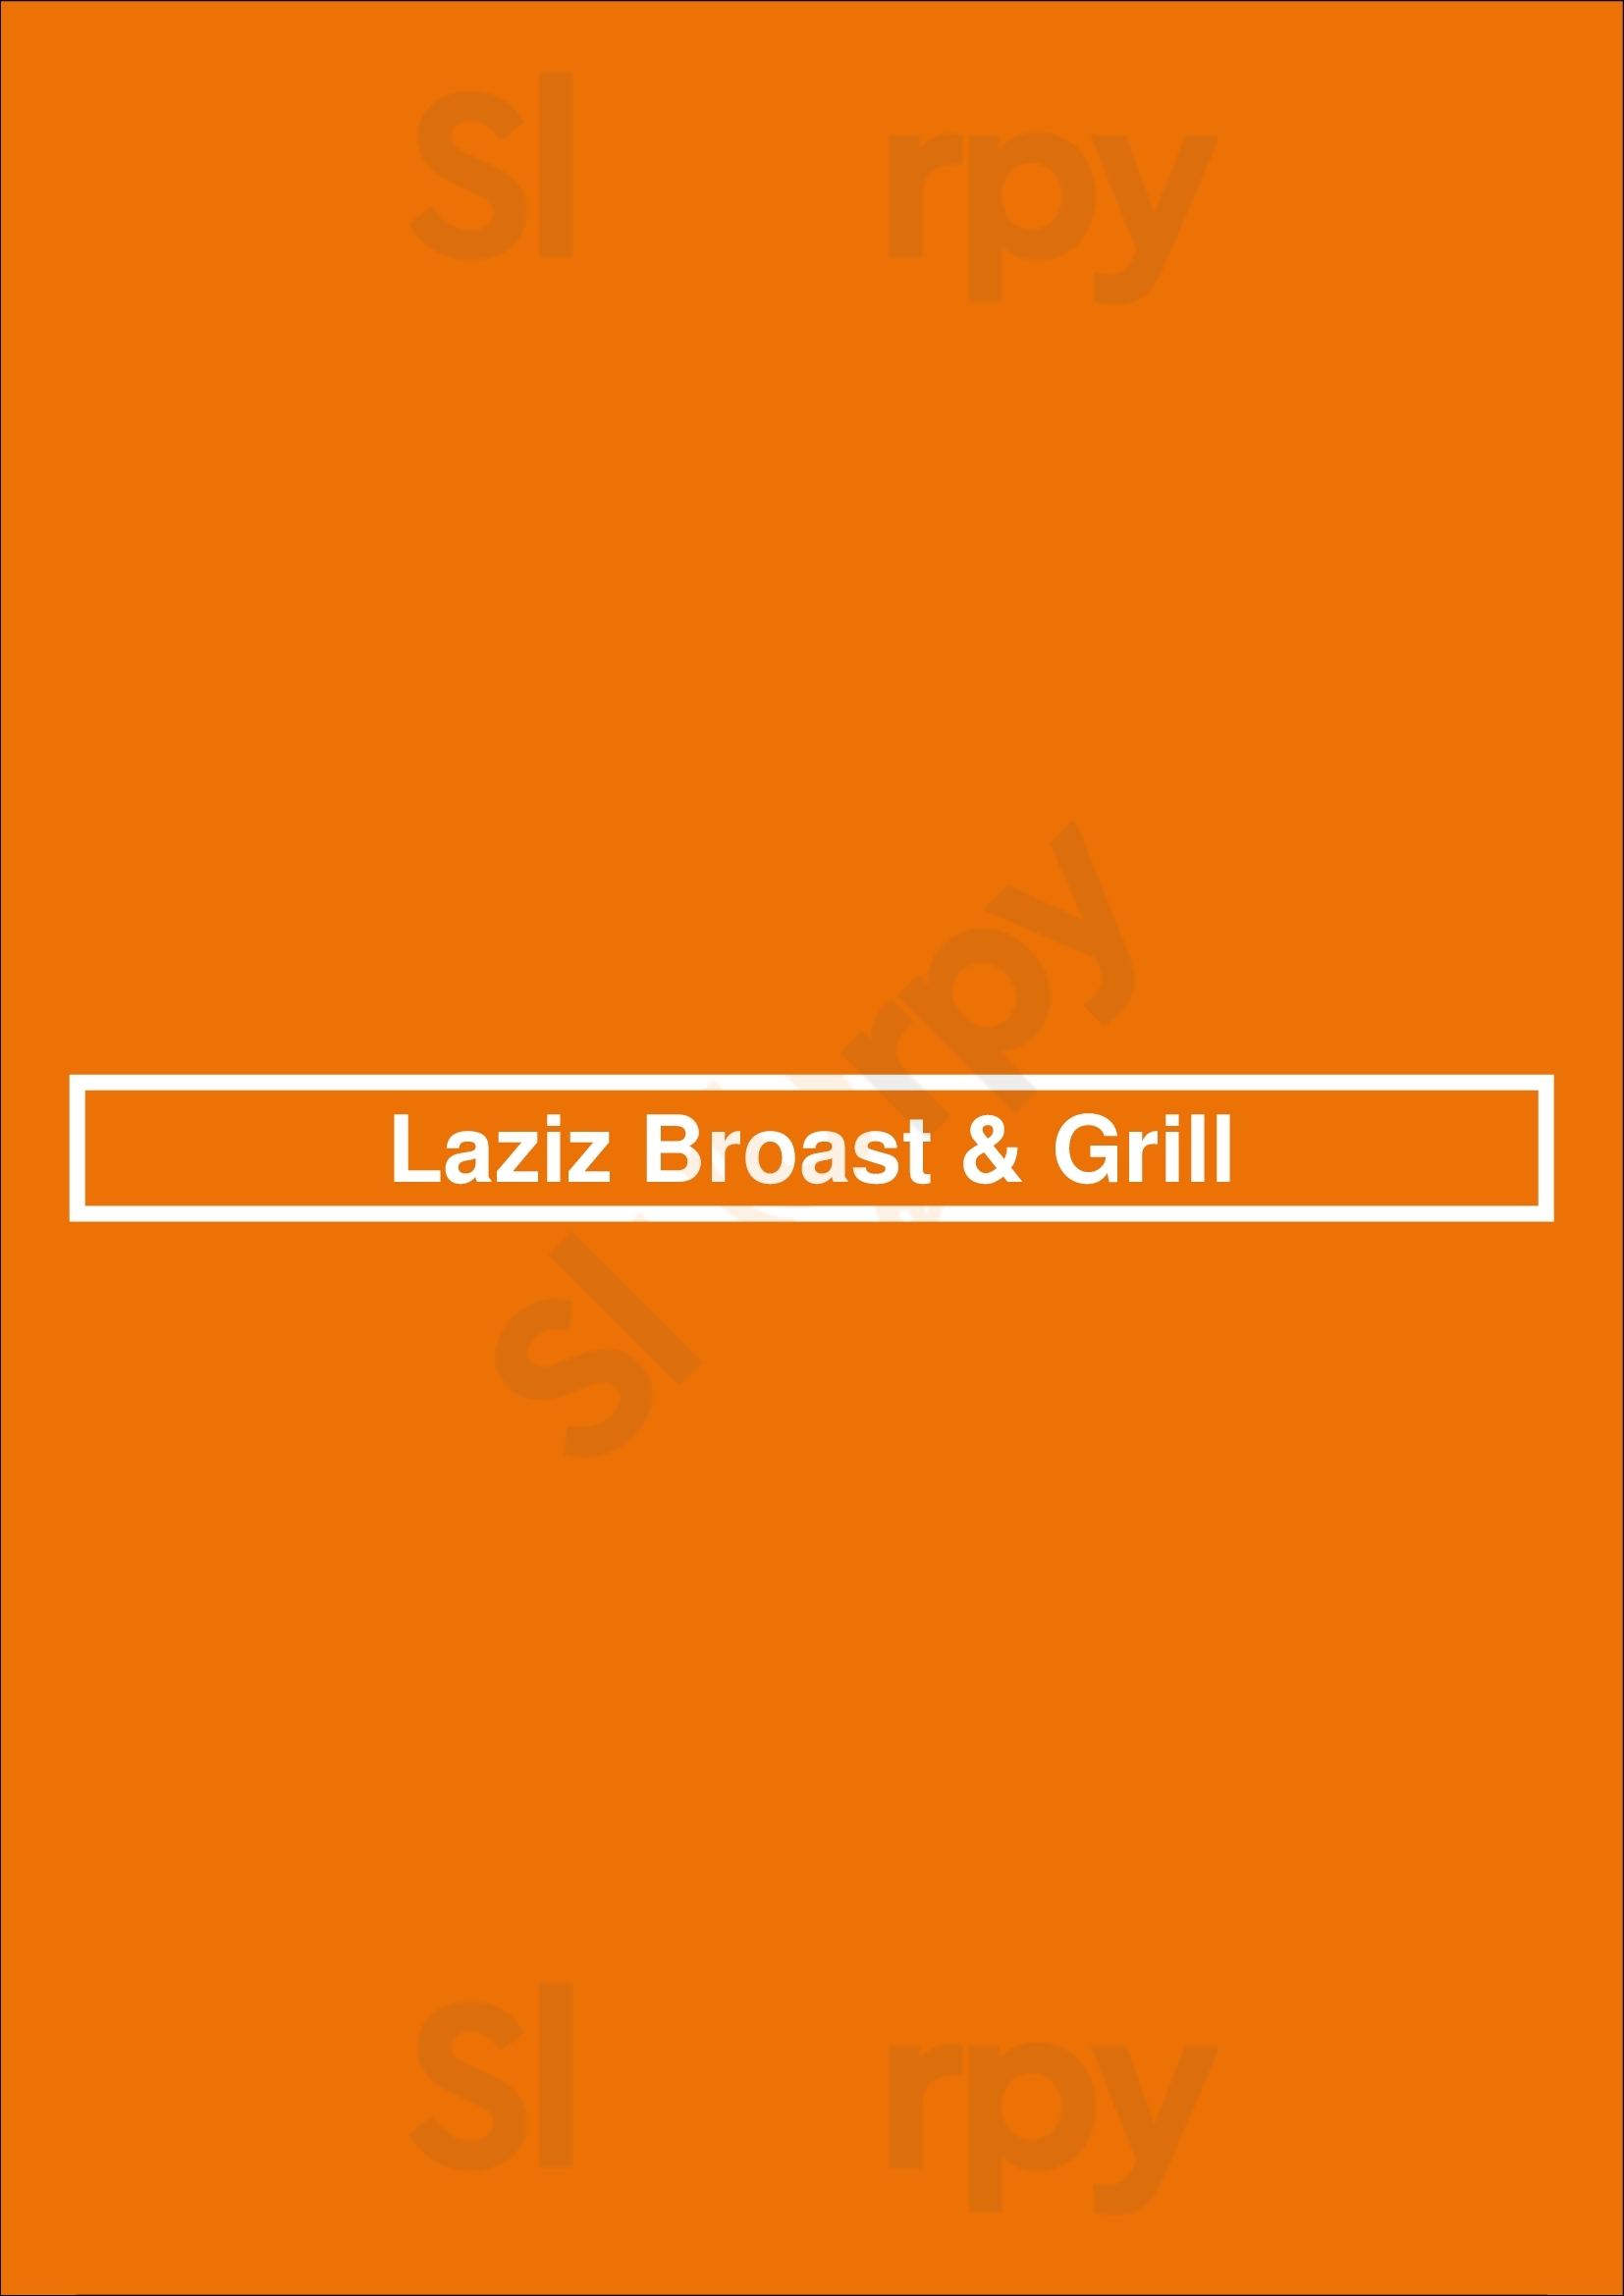 Laziz Broast & Grill Ottawa Menu - 1